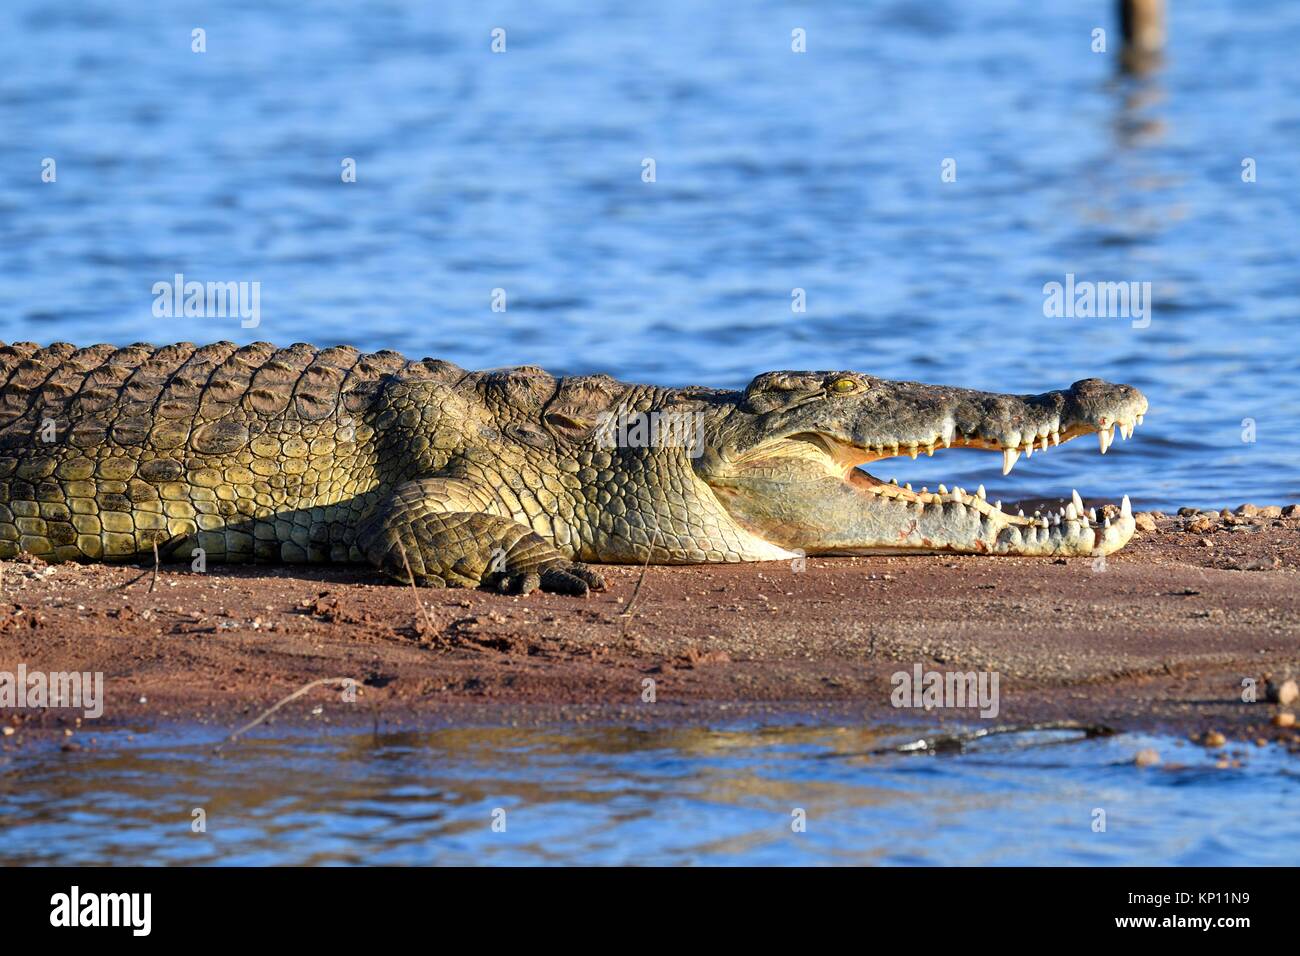 El cocodrilo del Nilo (Crocodylus niloticus) descansando en las orillas del lago Kariba con su quijada abierta. Parque Nacional de Matusadona, Zimbabwe. Foto de stock